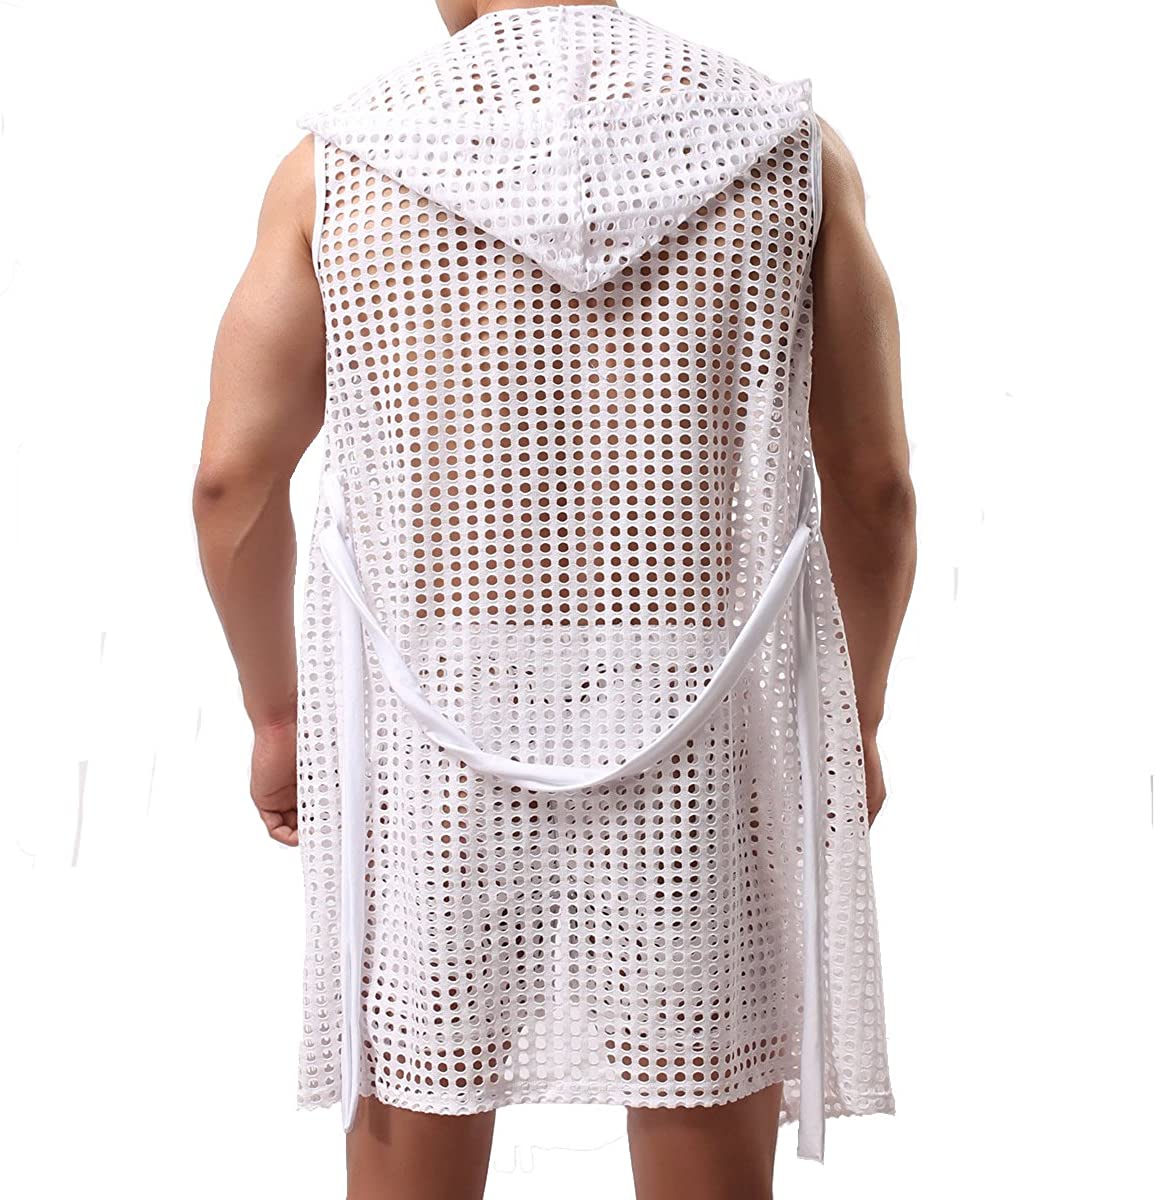 Men's Mesh Fishnet Robes Hooded Short Sleeveless Bathrobes Nightwear